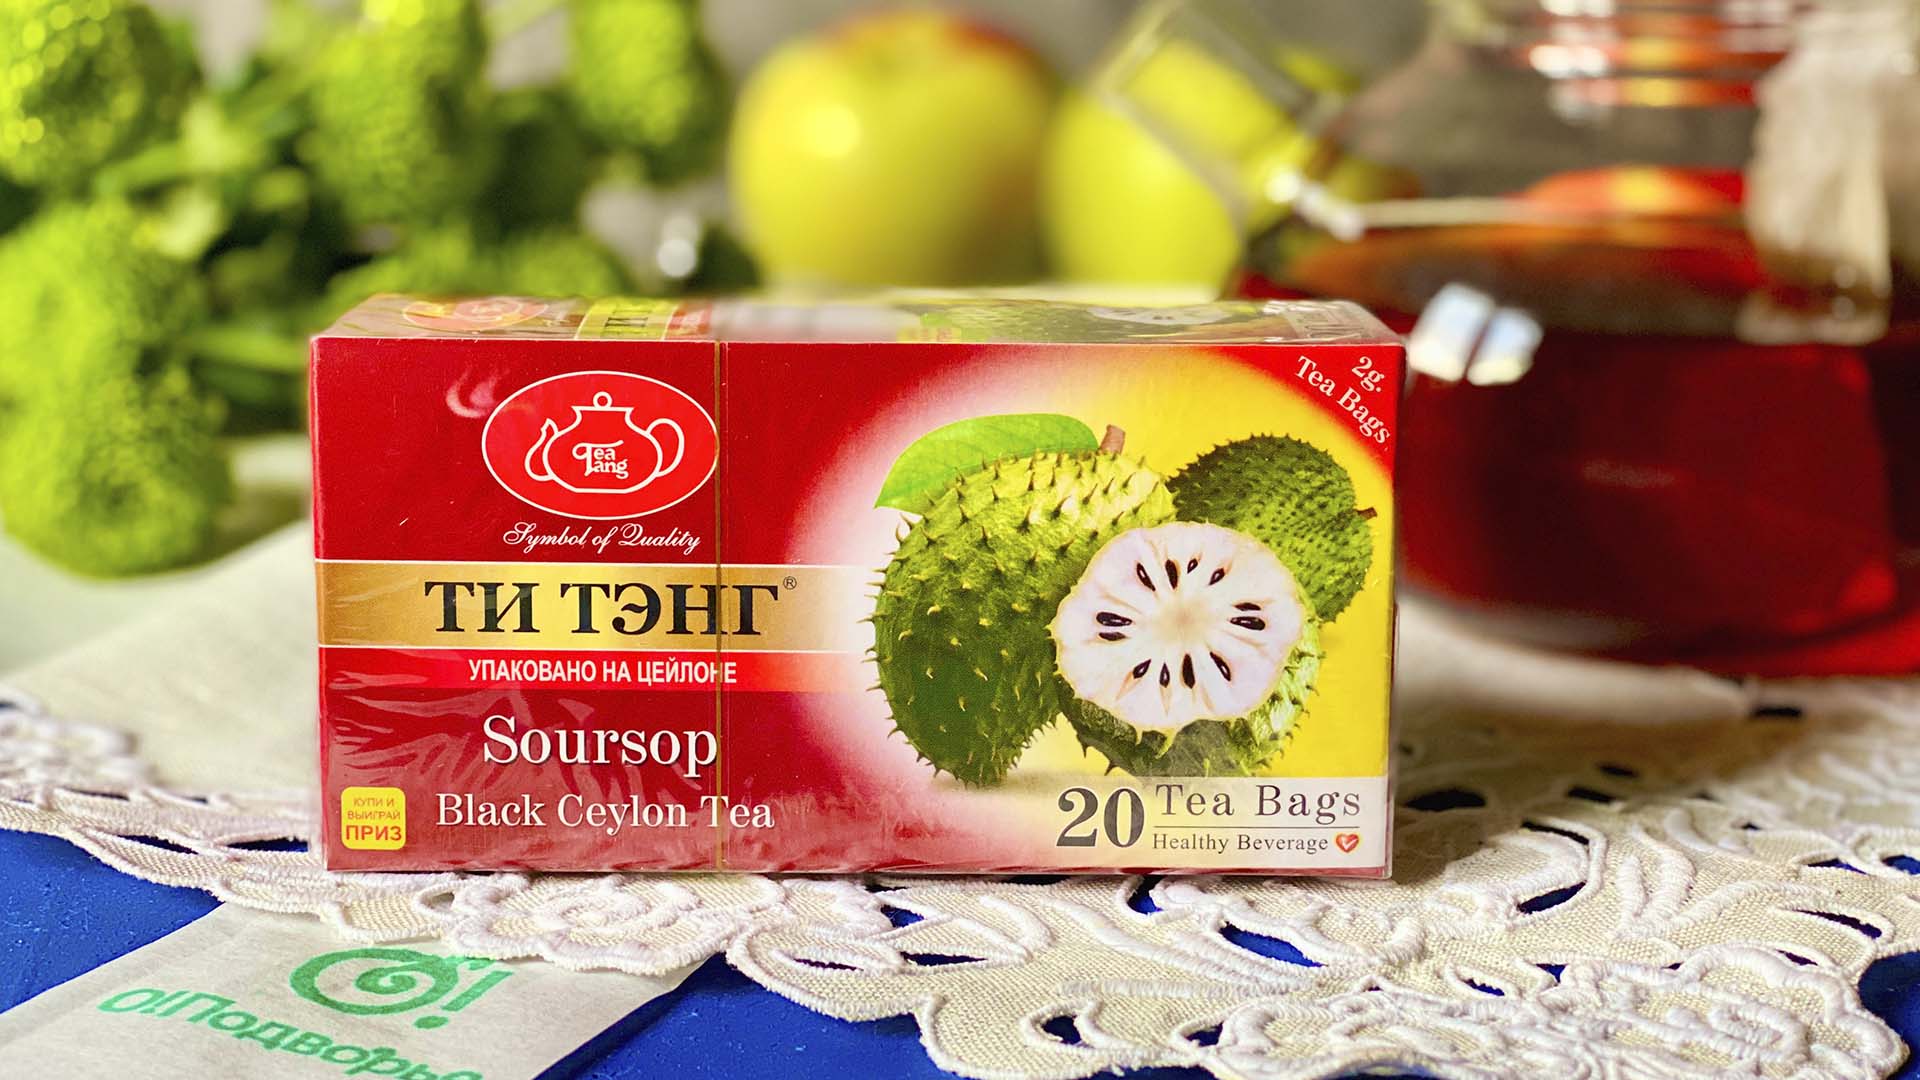 Черный чай ТИ ТЭНГ Soursop пакетированный 20 пакетов